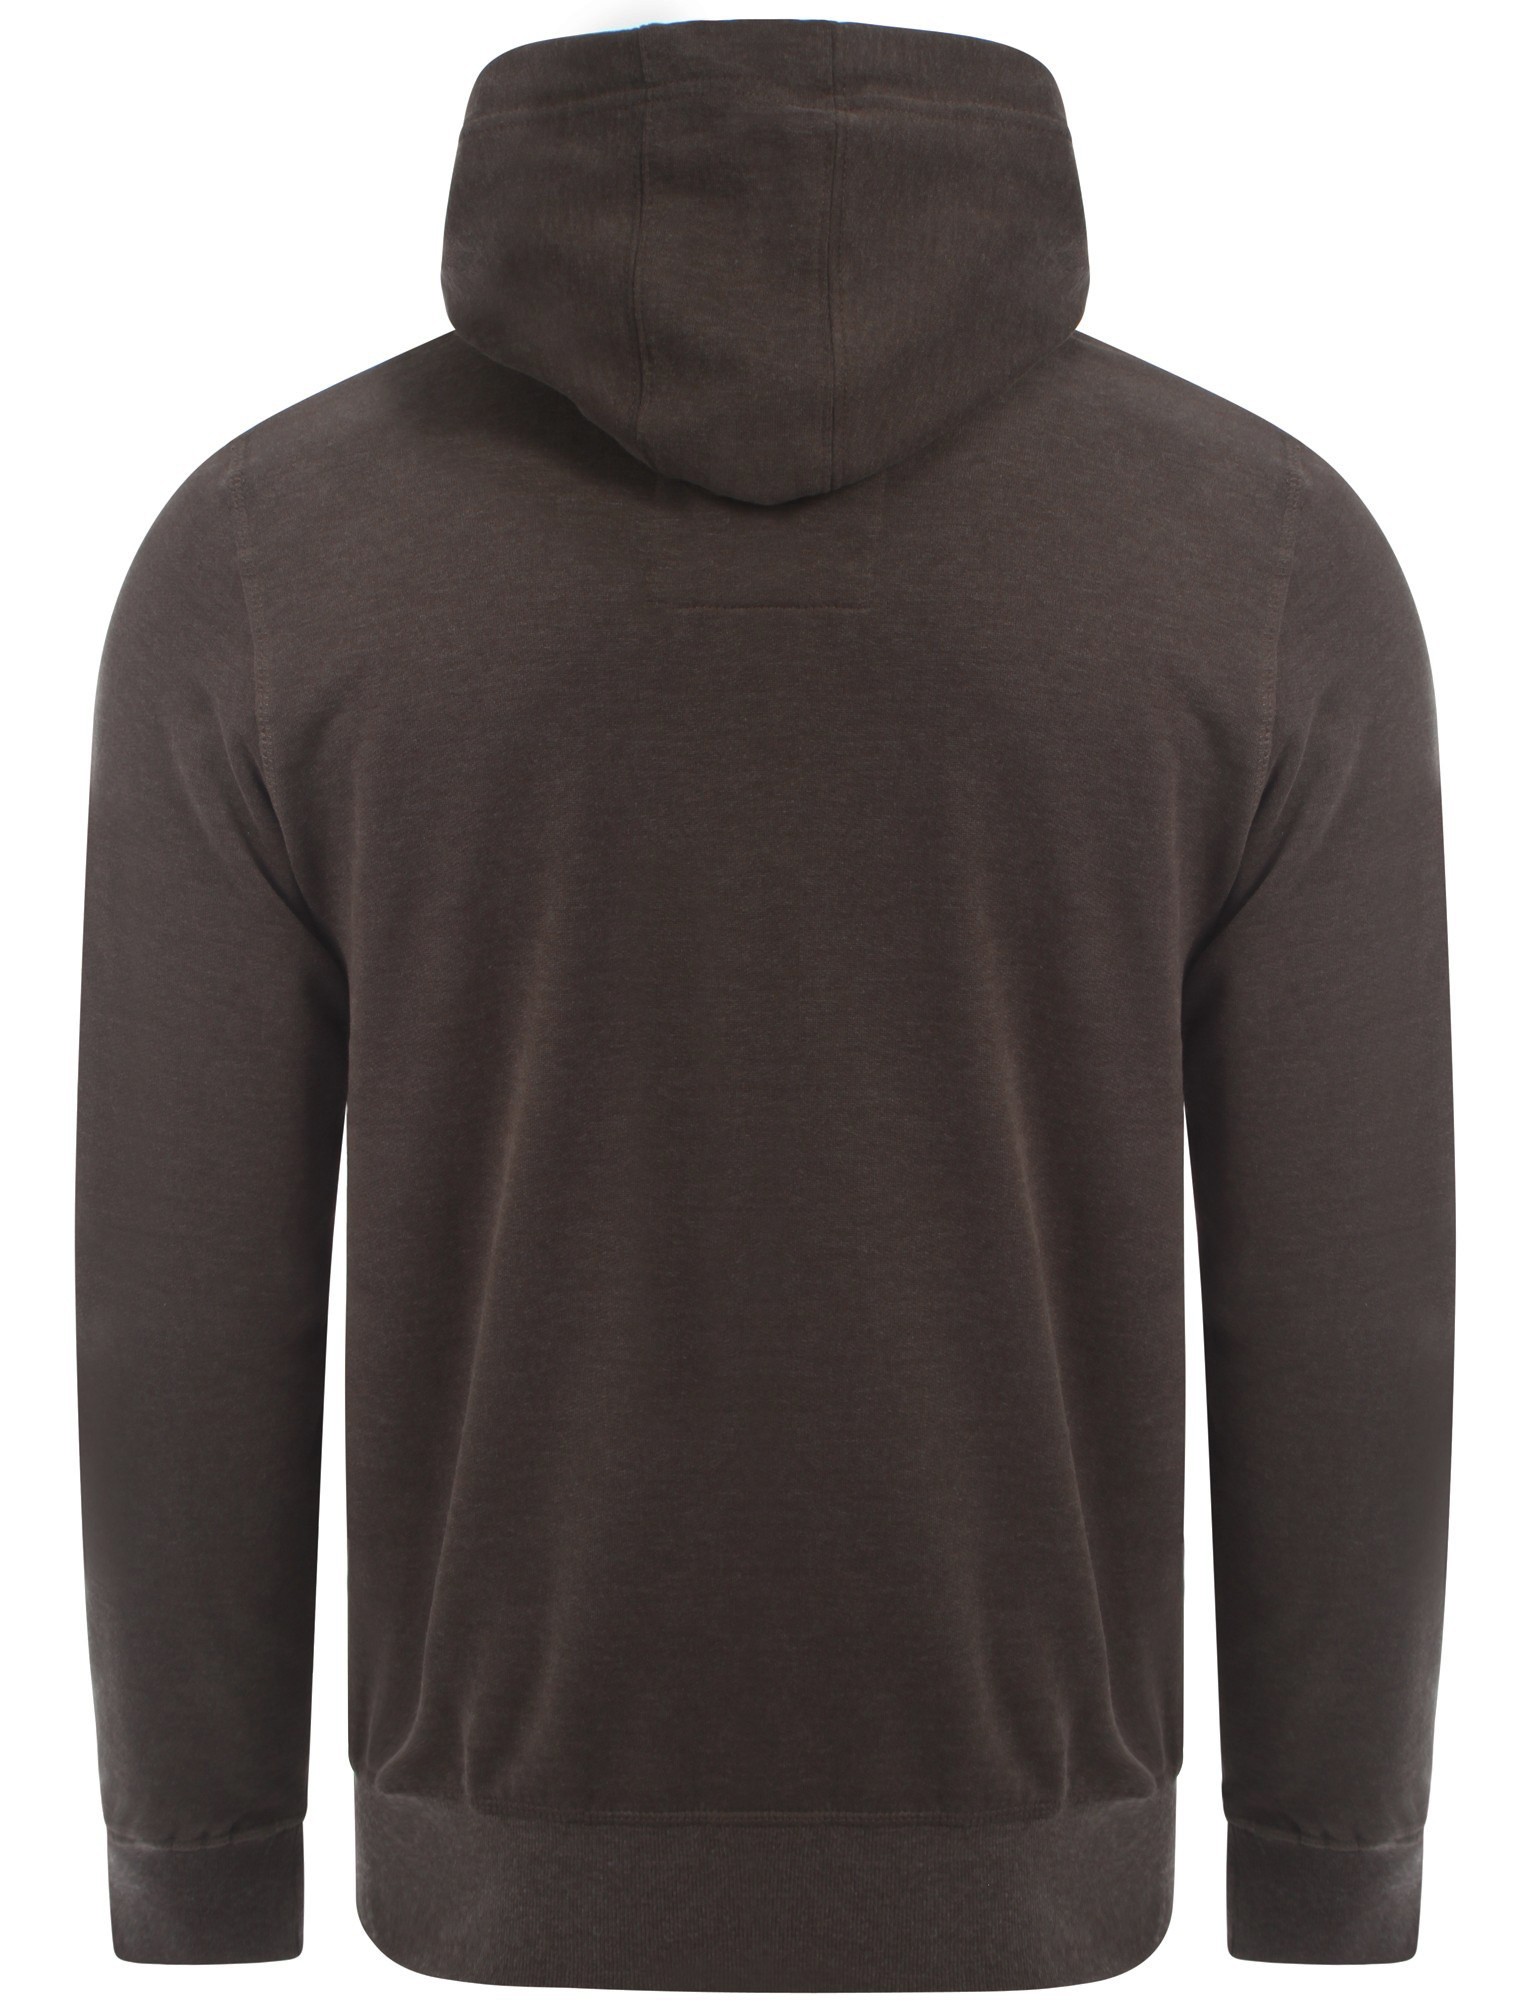 Download New Mens Bronx Pullover Hoodie Hooded Sweatshirt Printed ...